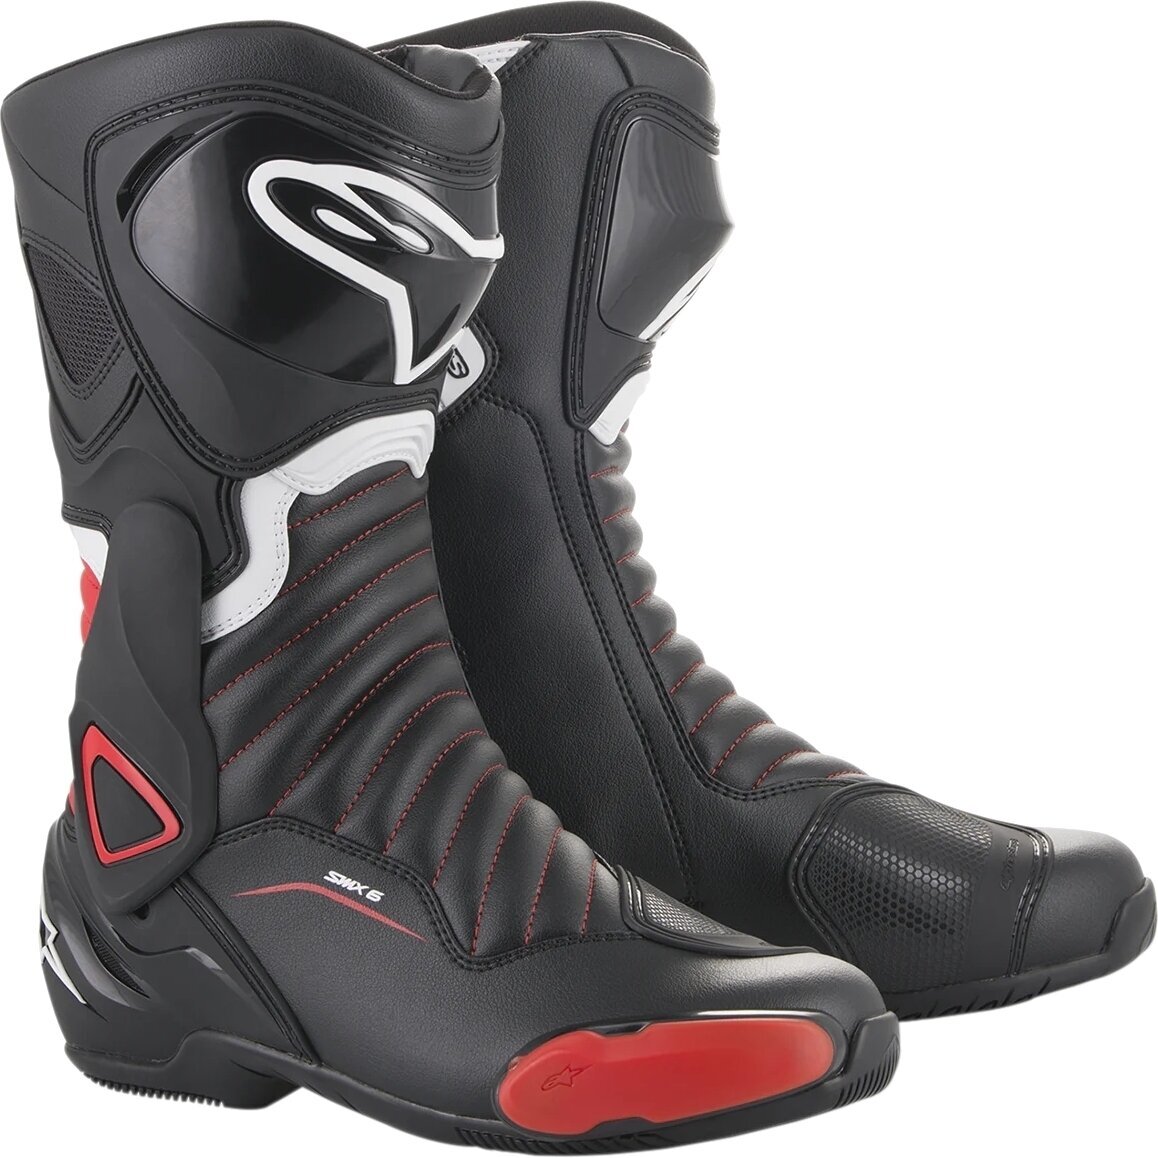 Topánky Alpinestars SMX-6 V2 Boots Black/Gray/Red Fluo 36 Topánky